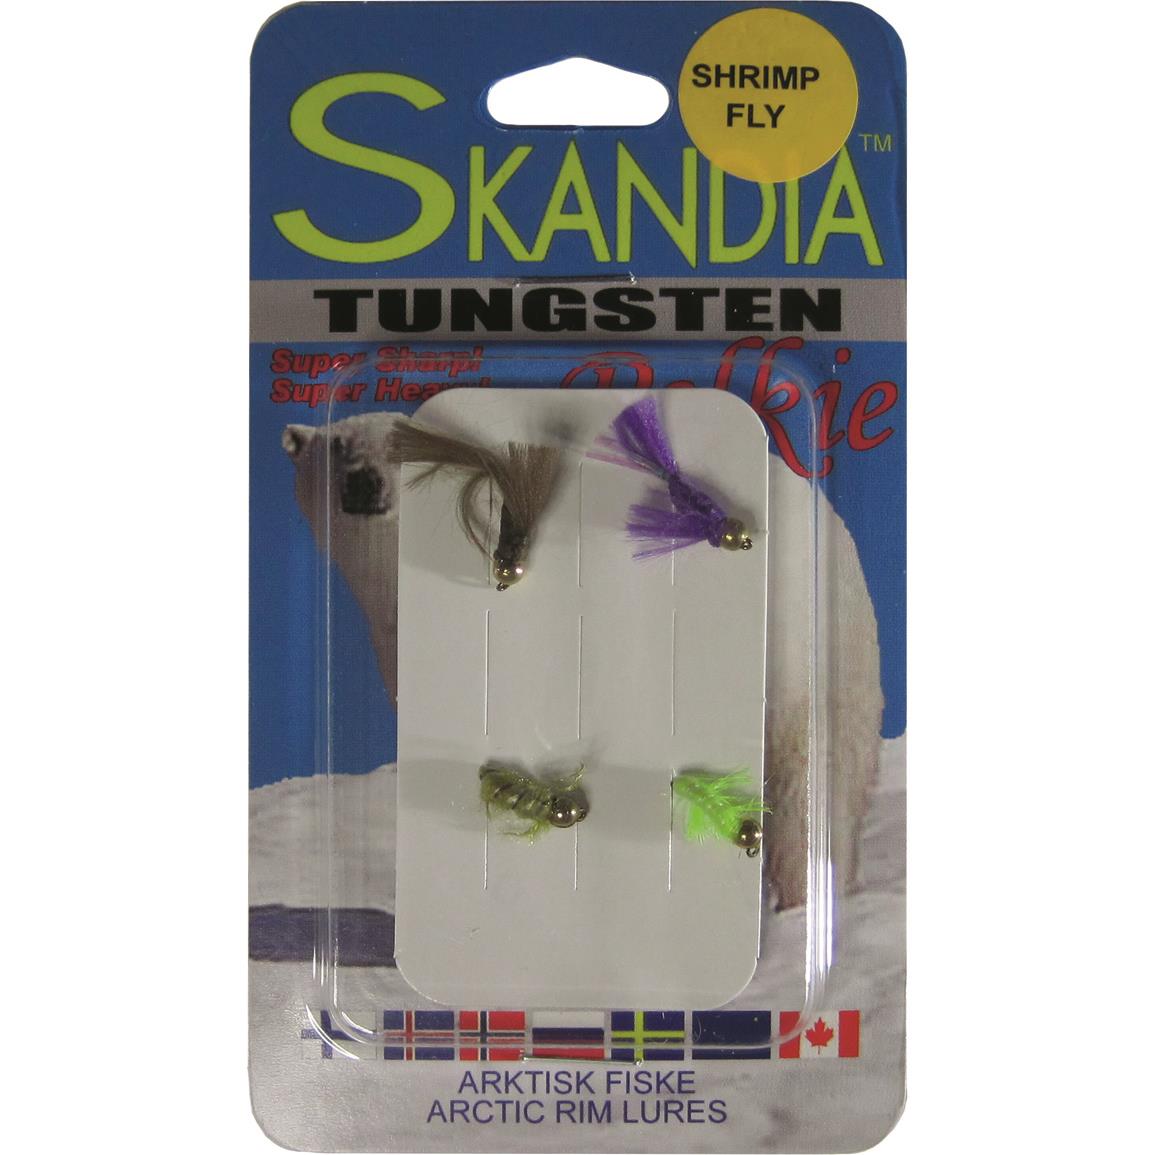 Skandia Tungsten Shrimp Fly Kit, 4 Pack